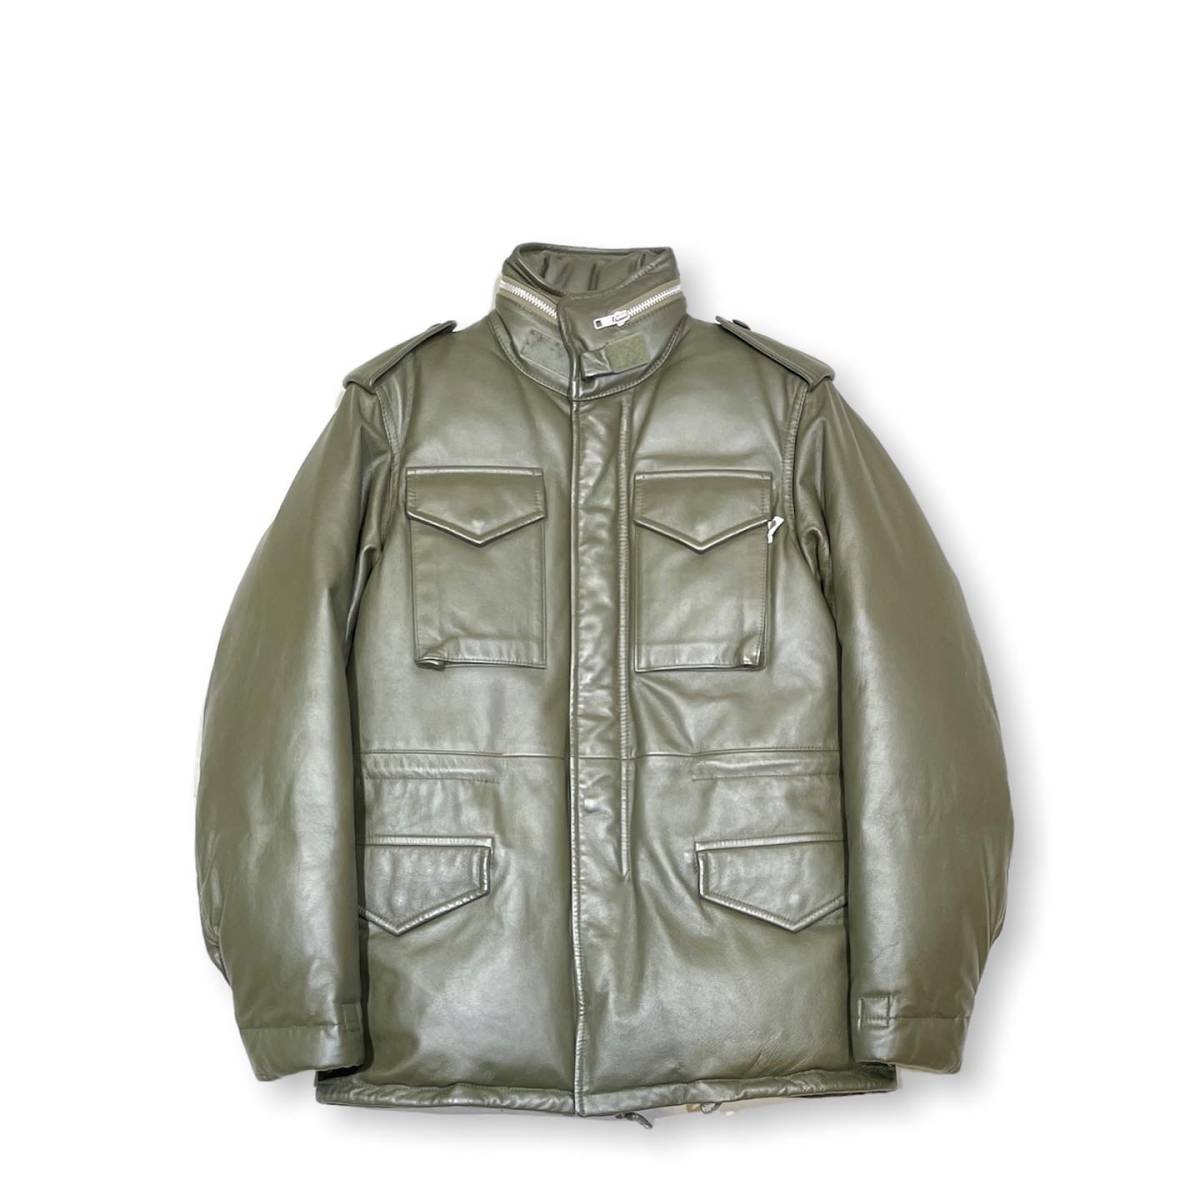 36400円 高い素材 wtaps 初期 PASUT jacket ダウンジャケット